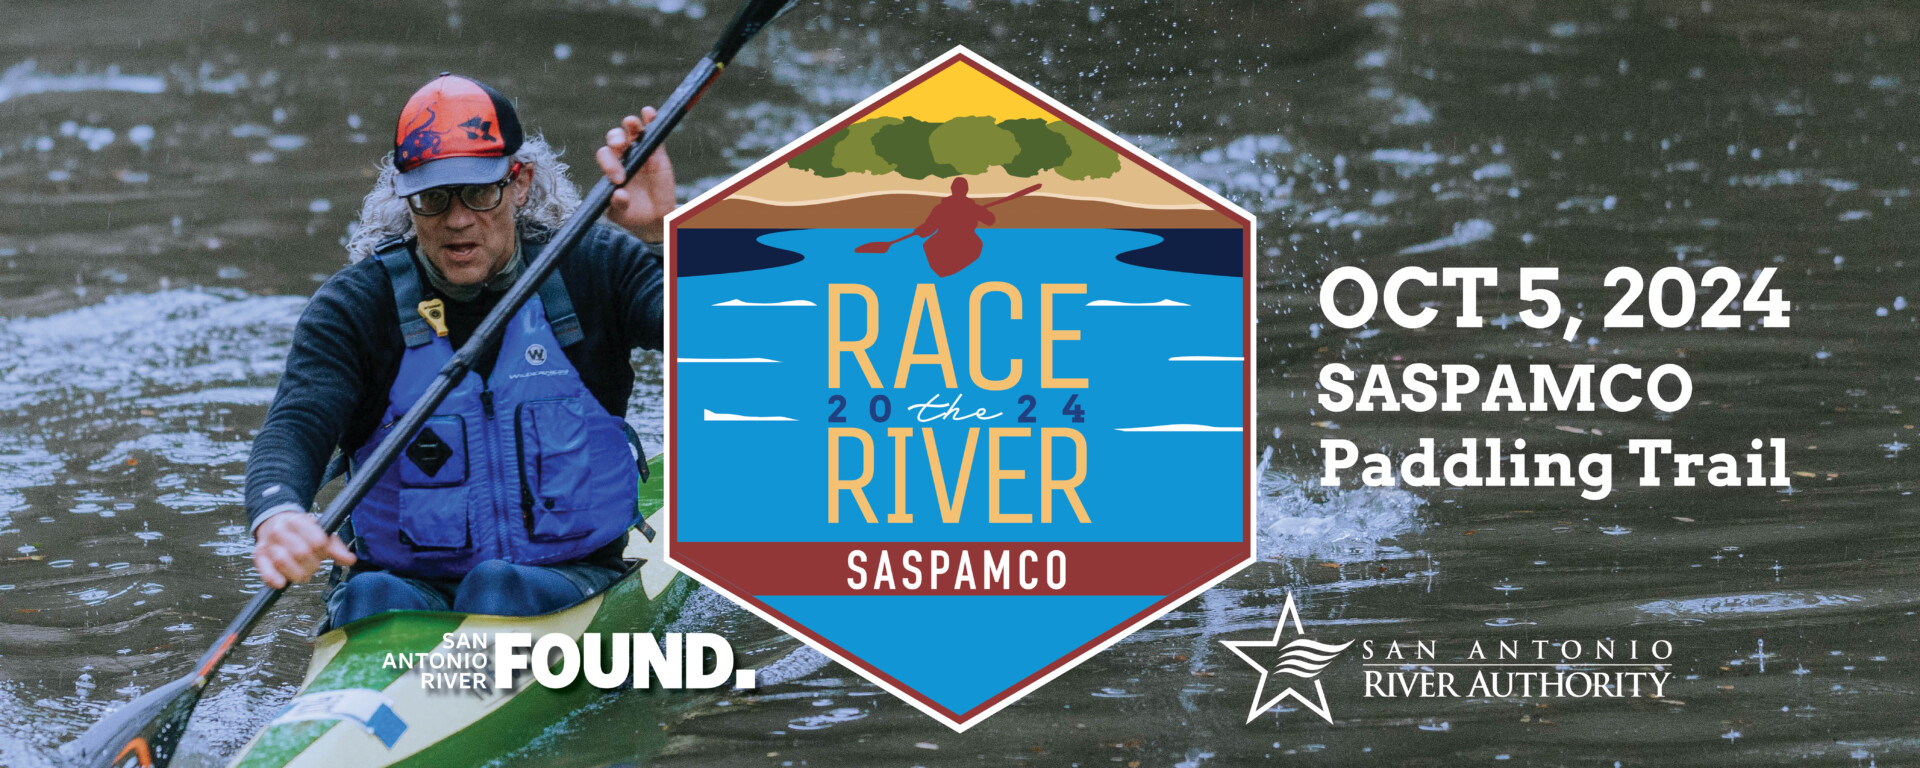 Race the River 2024 – SASPAMCO